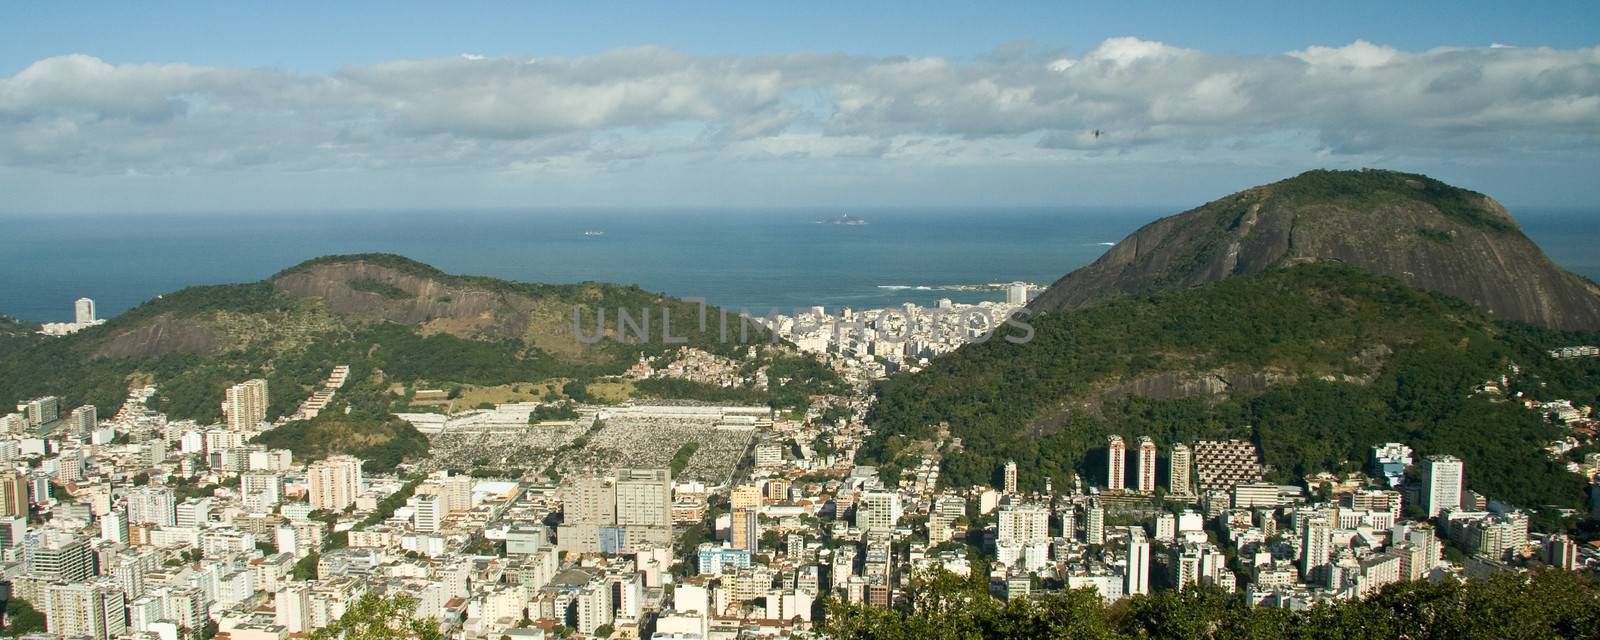 Rio de Janeiro's unique landscape by CelsoDiniz